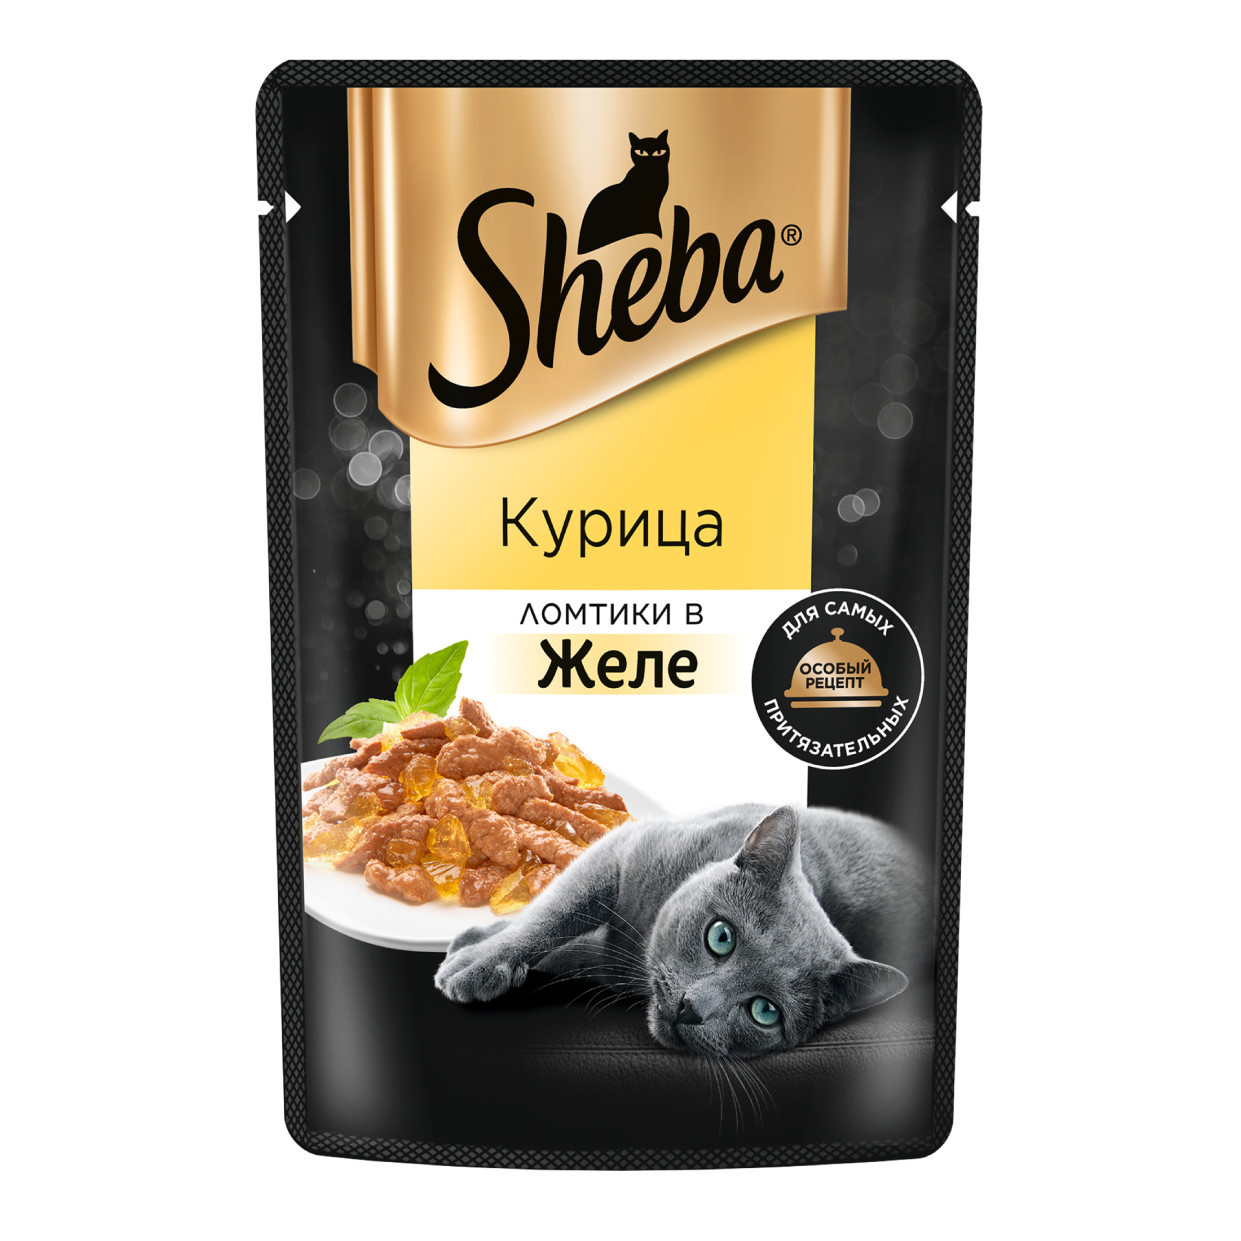 sheba влажный корм для кошек ломтики в желе с курицей Sheba Sheba влажный корм для кошек «Ломтики в желе с курицей» (75 г)